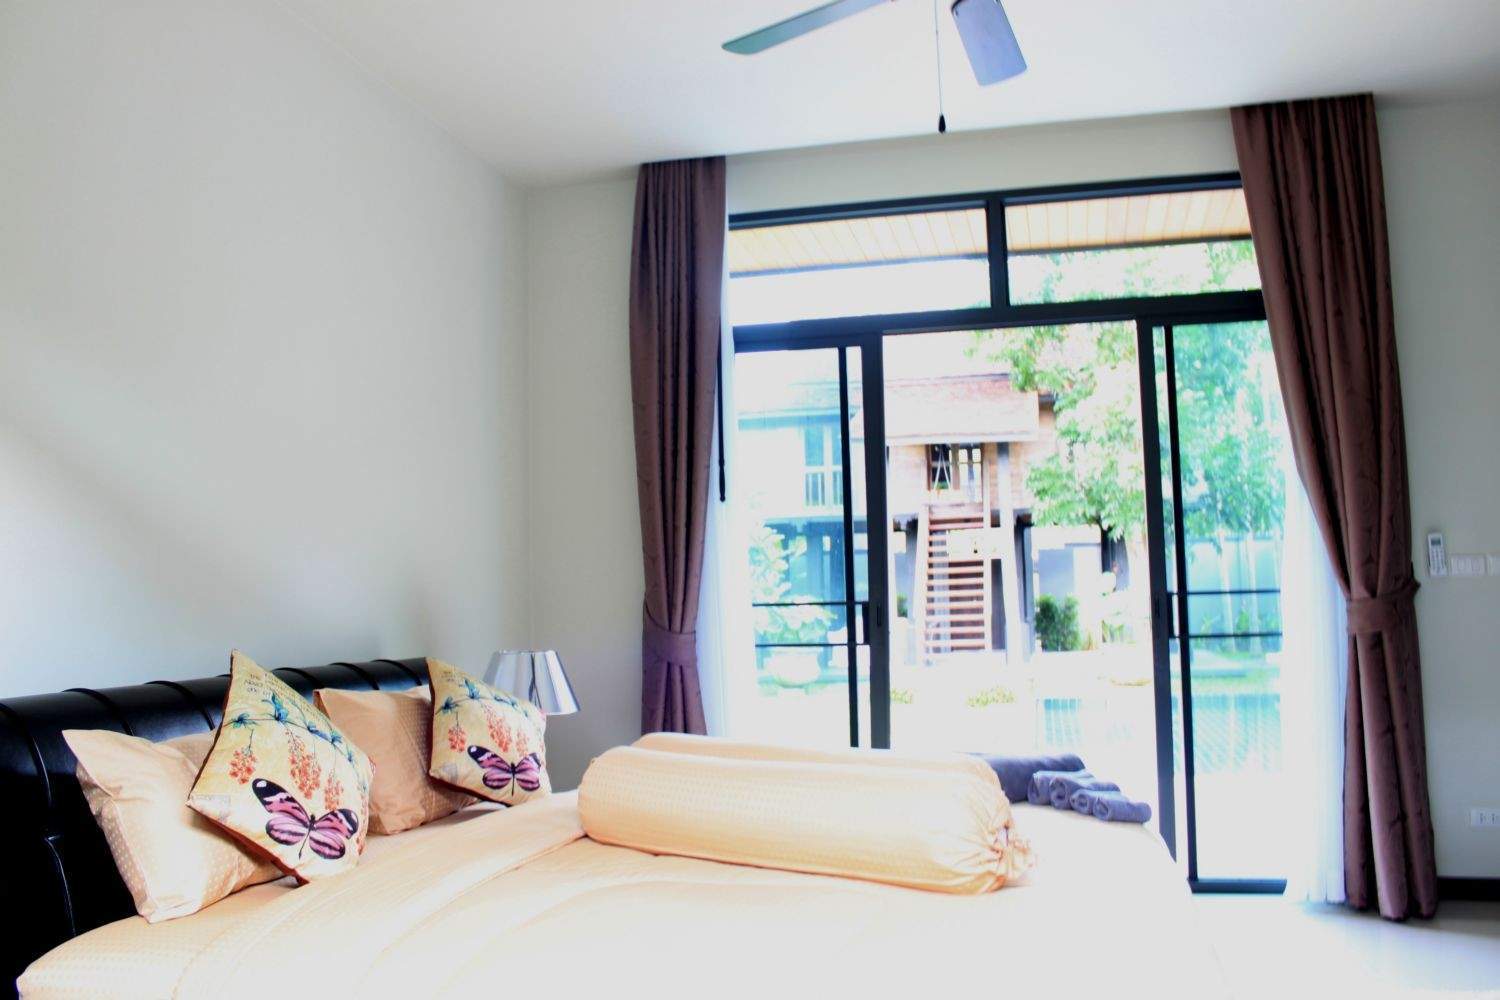 Rent villa Saiyuan, Thailand, Phuket, Nai Harn | Villacarte